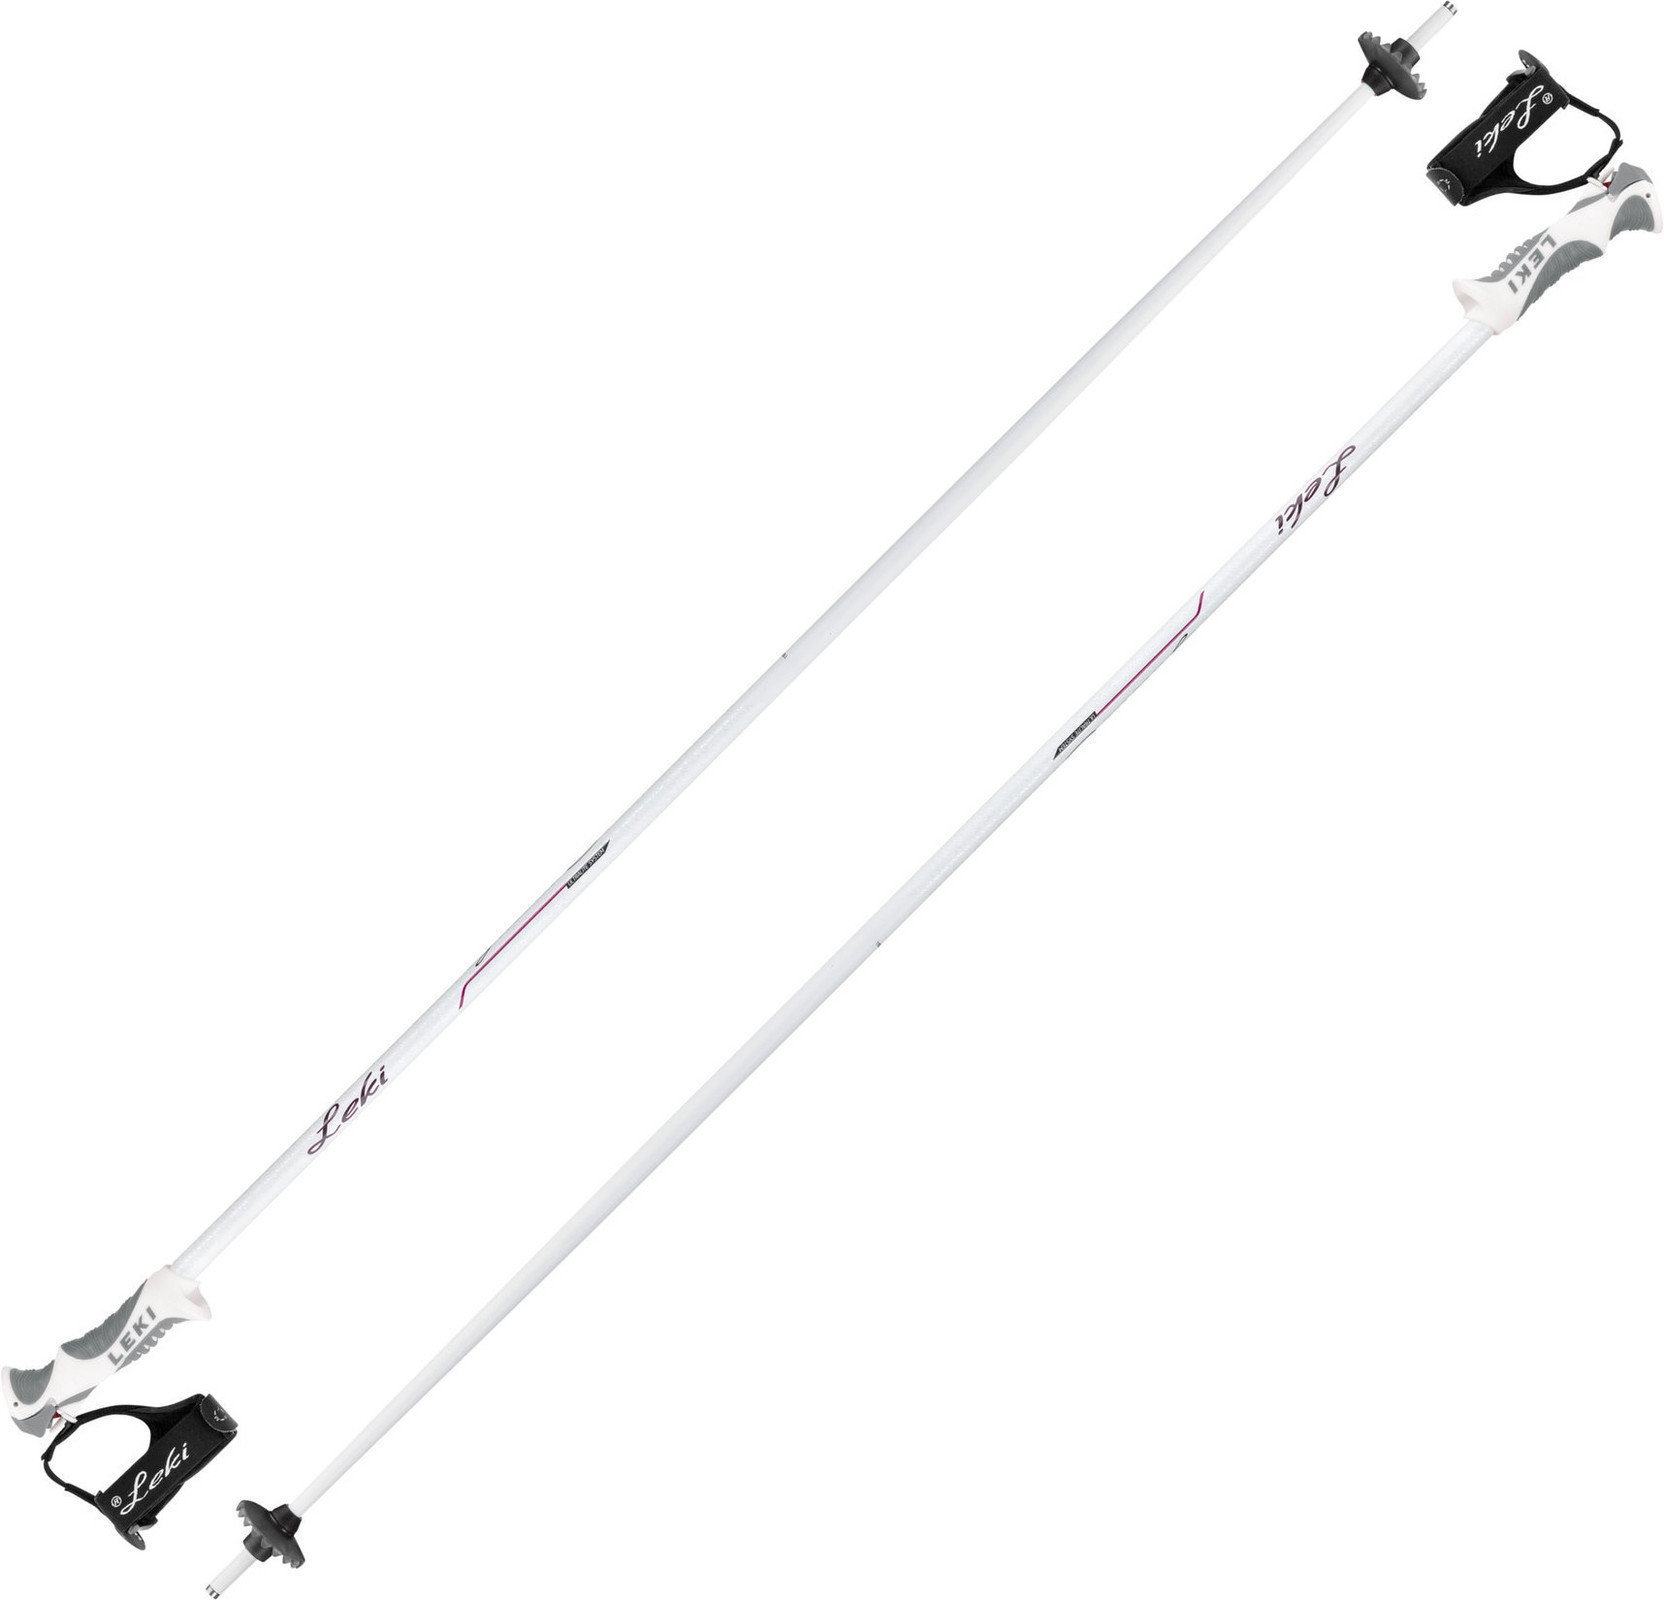 Ski Poles Leki Giulia S White/Anthracite/Berry 115 cm Ski Poles